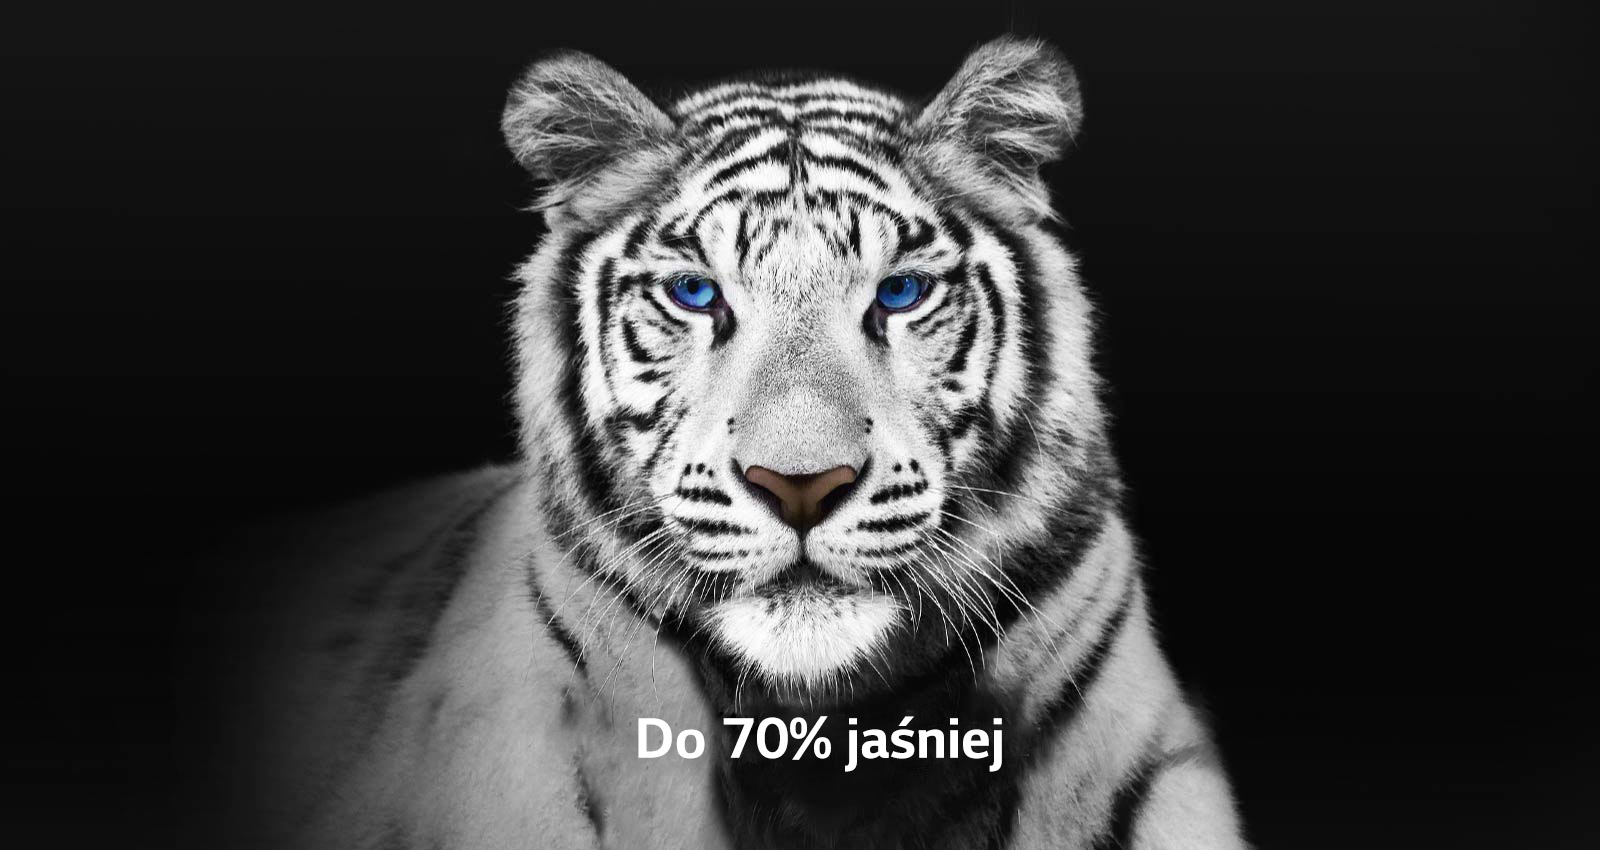 Видео двух фотографий белого тигра рядом.  Страница Brightness Booster Max стала на 70 % ярче и заполнила весь экран.